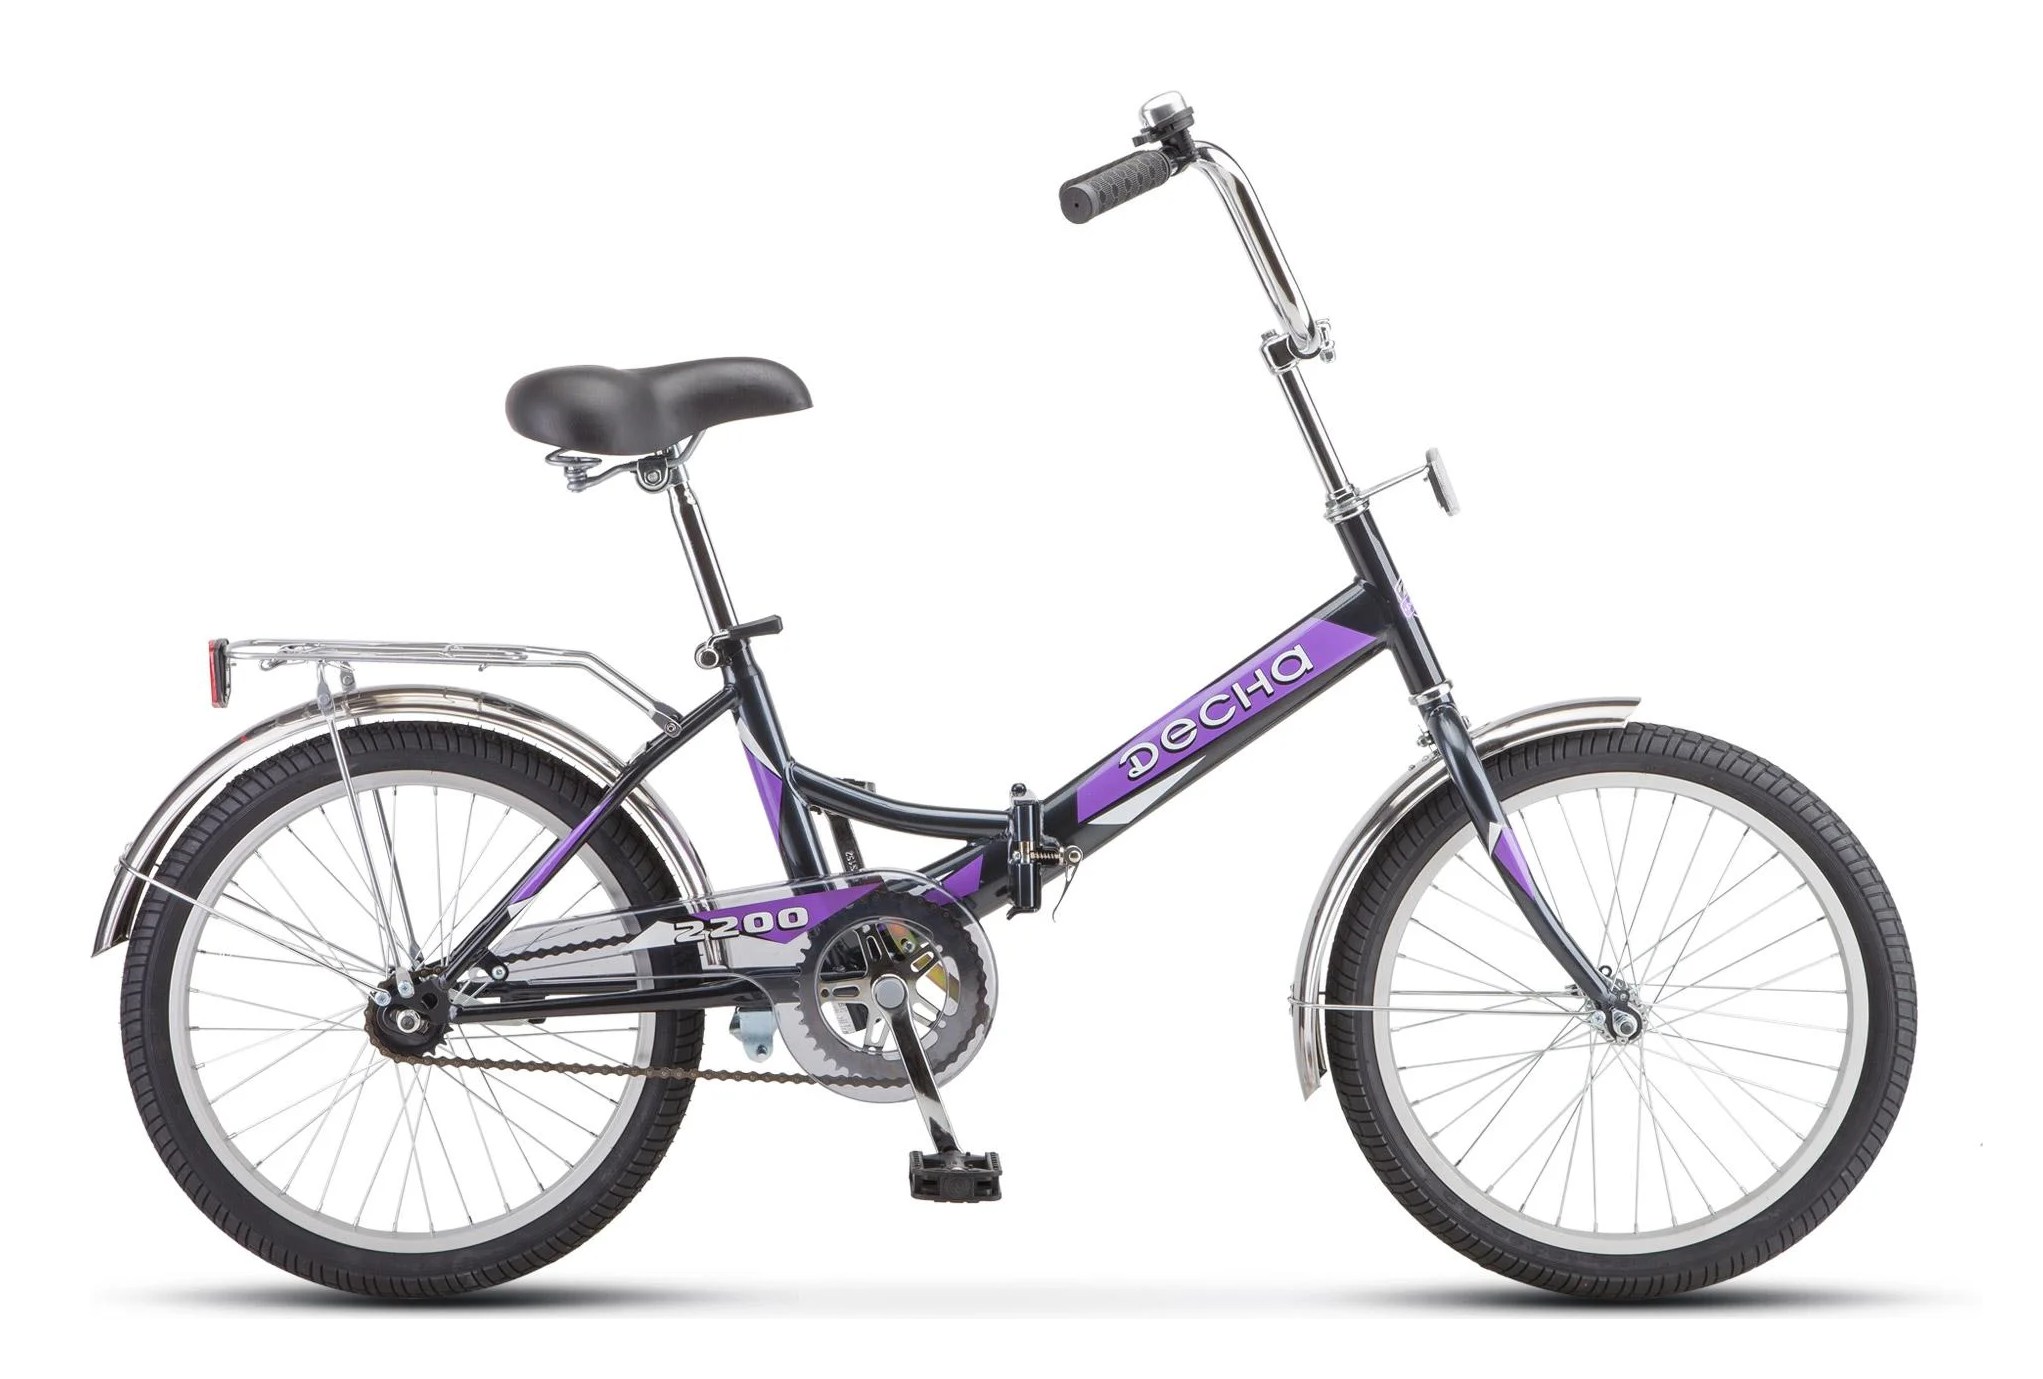 Купить подростковый велосипед для мальчика 10 лет. Stels Pilot 710 24 z010 (2018). Stels Pilot 450 20 z011. Stels - Pilot 450 20" z011 (2017). Stels Pilot 450.